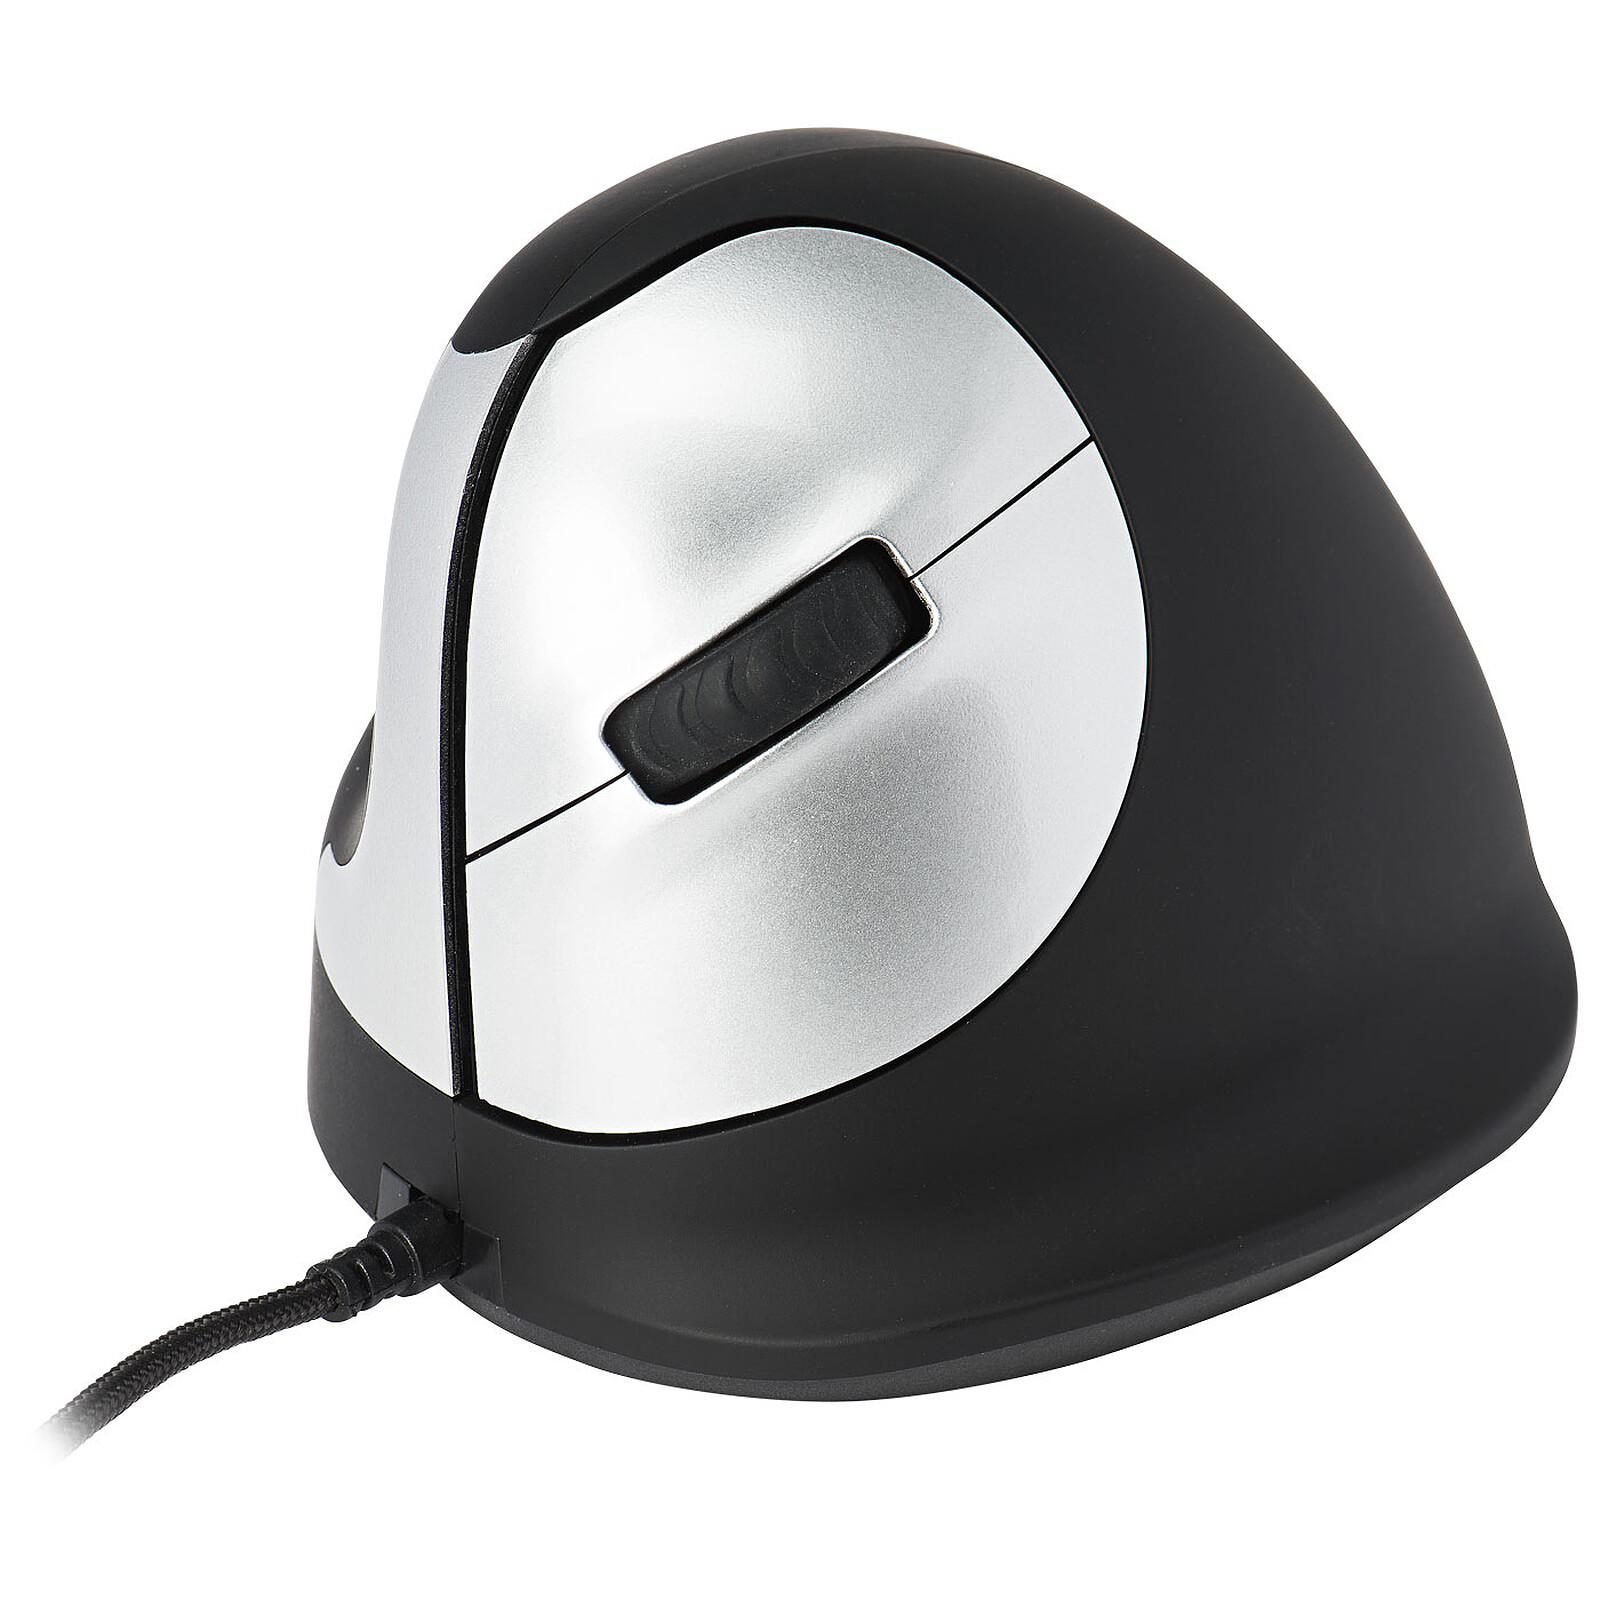 R-Go Tools Wired Vertical Mouse (pour gaucher) - Souris PC - Garantie 3 ans  LDLC